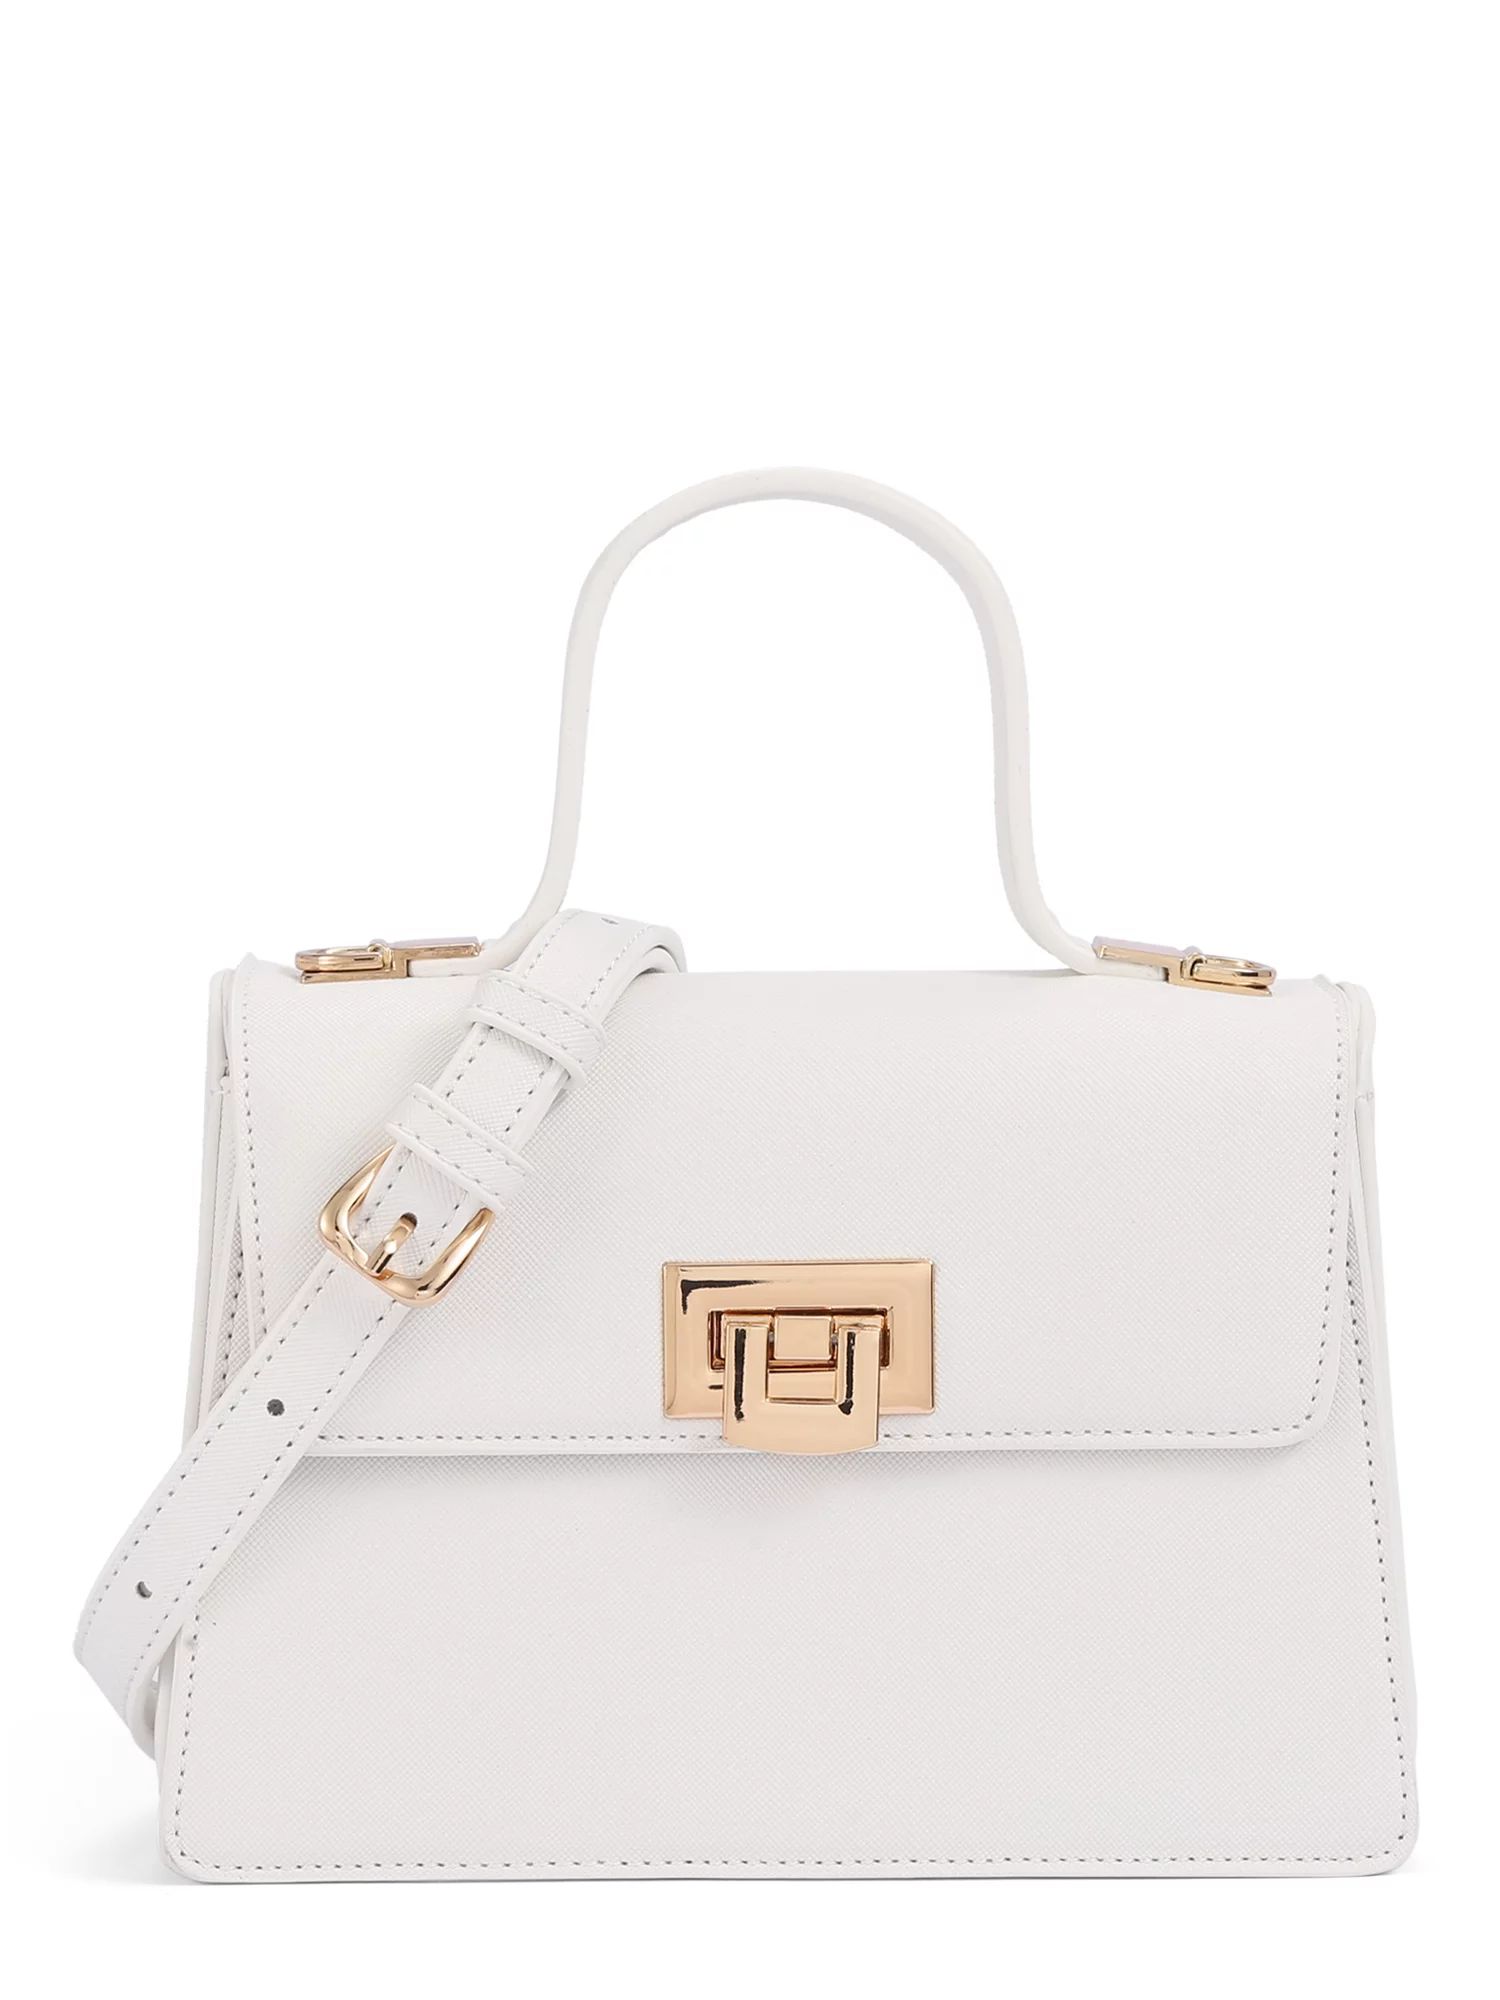 BeCool Women's Adult Top Handle Satchel Handbag with Lock White - Walmart.com | Walmart (US)